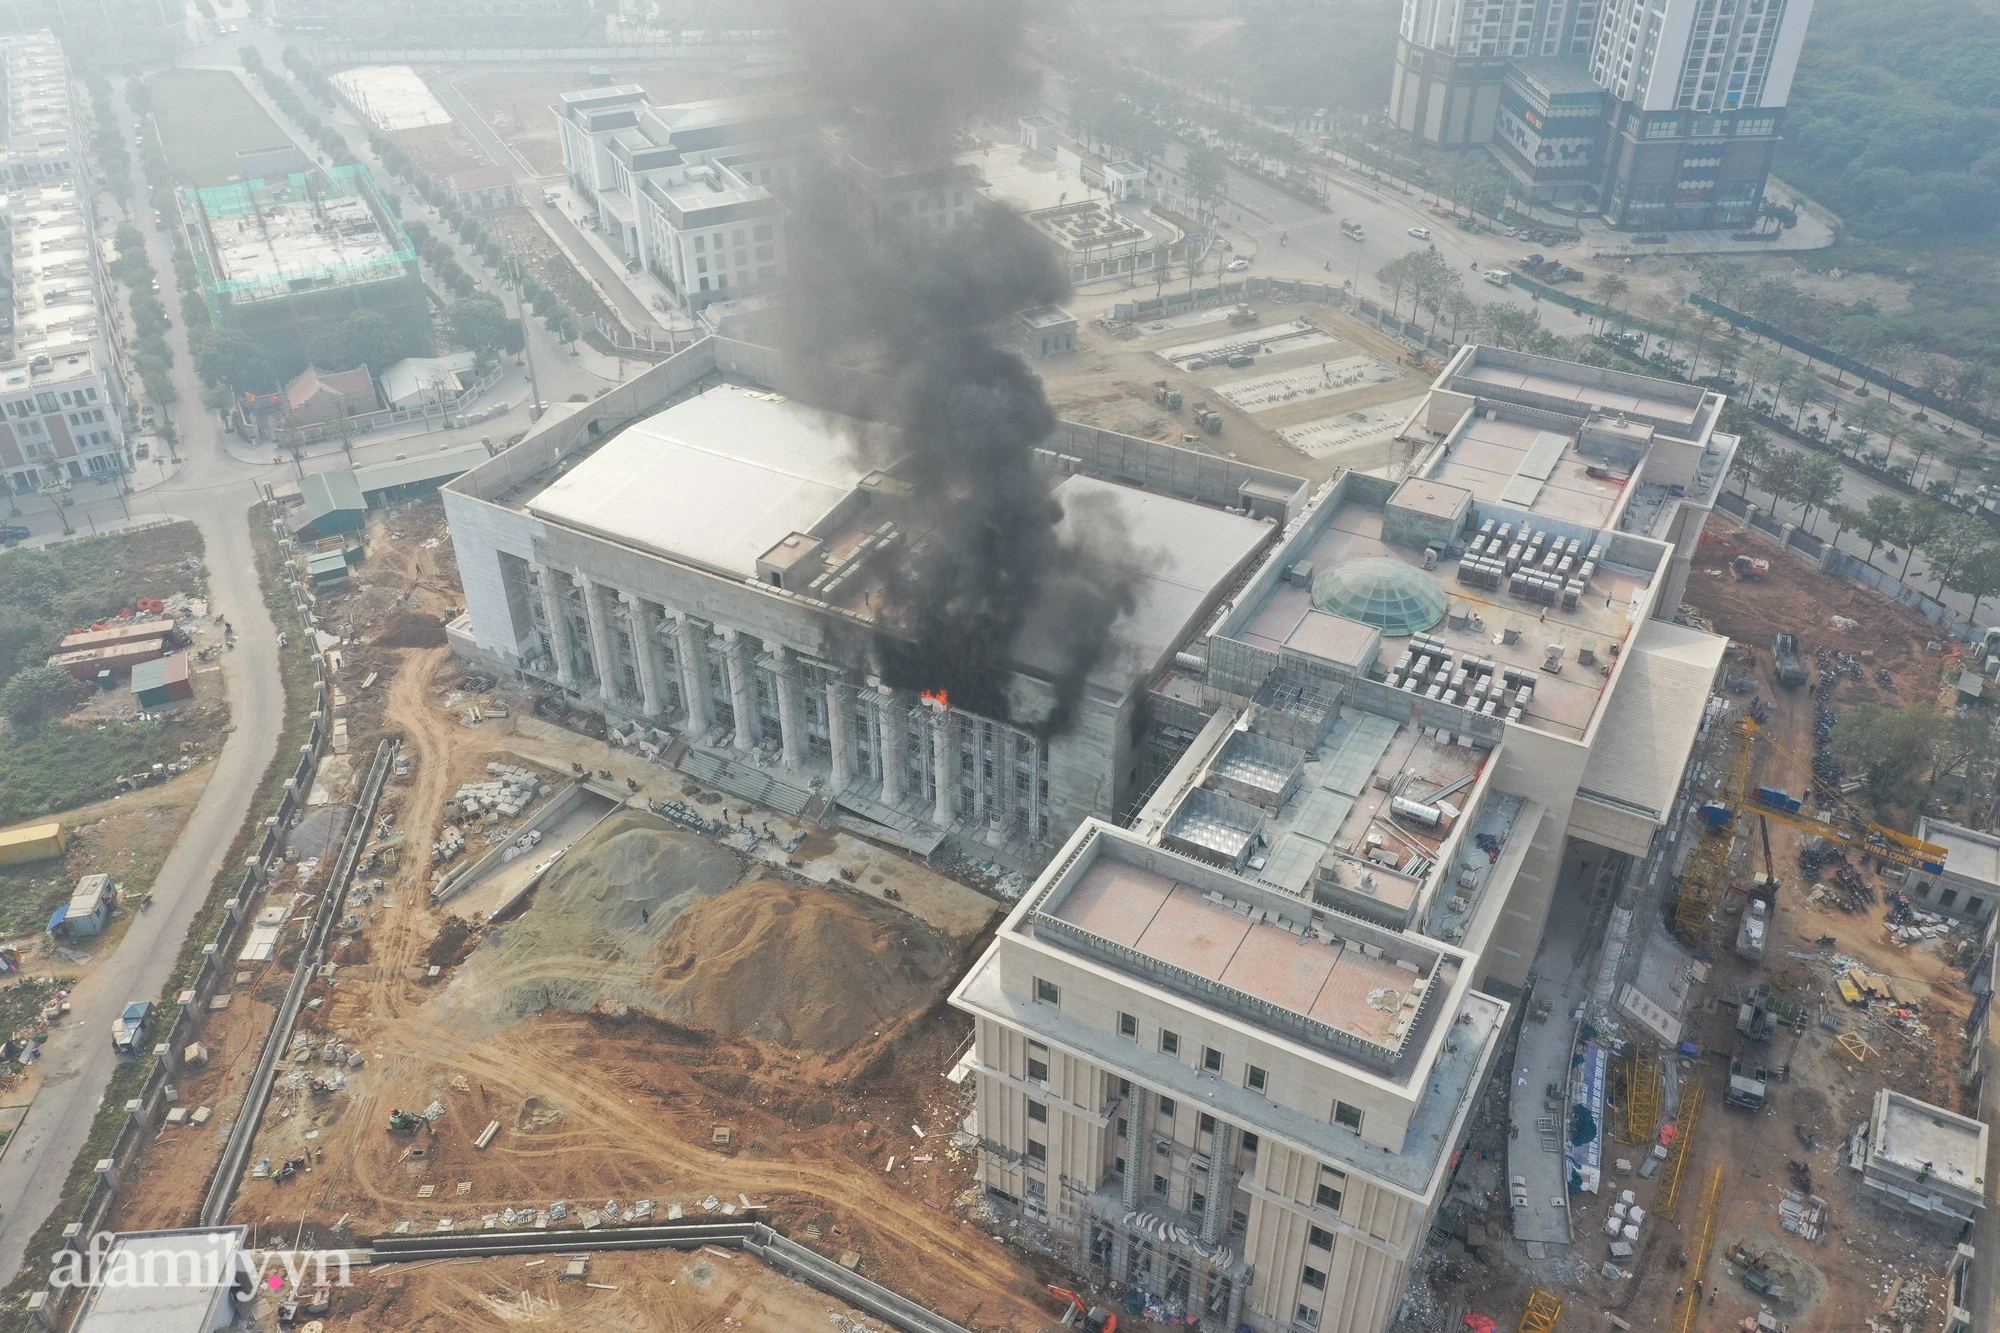 NÓNG: Cháy lớn tại trụ sở Tòa án Nhân dân TP Hà Nội đang xây dựng - ảnh 2